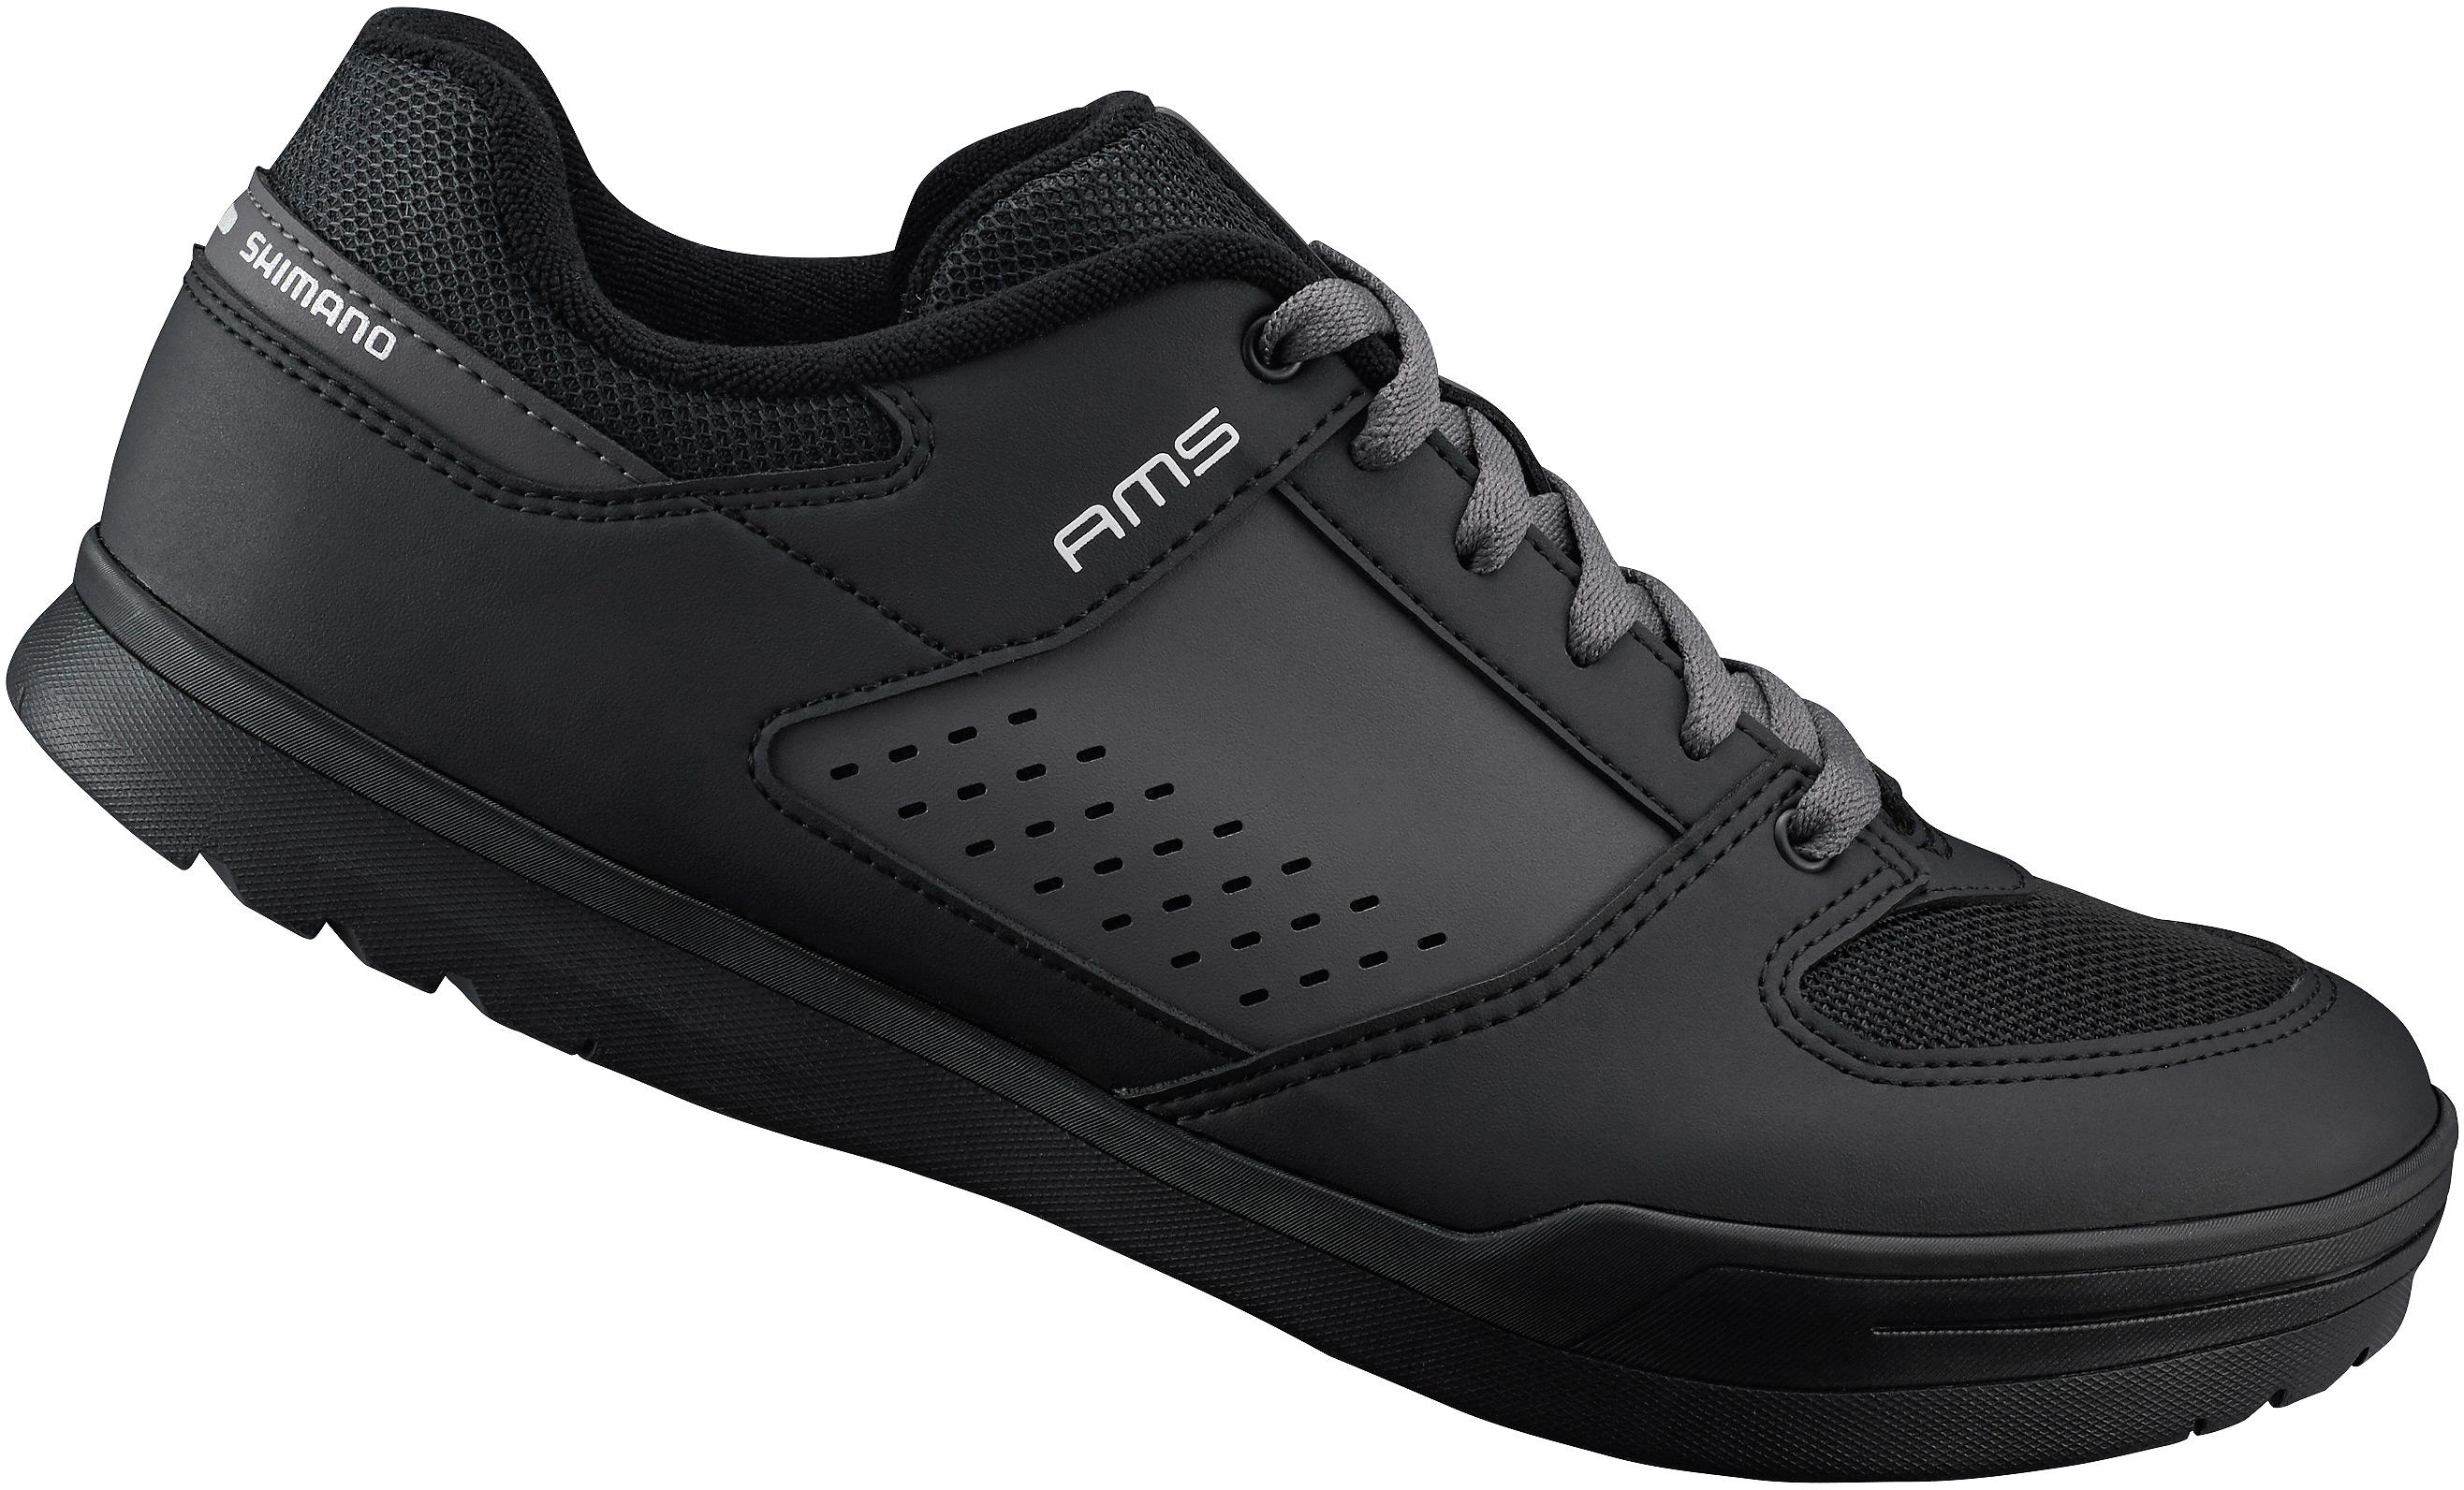 Am5 (Am501) Spd Shoes, Black, Size 36